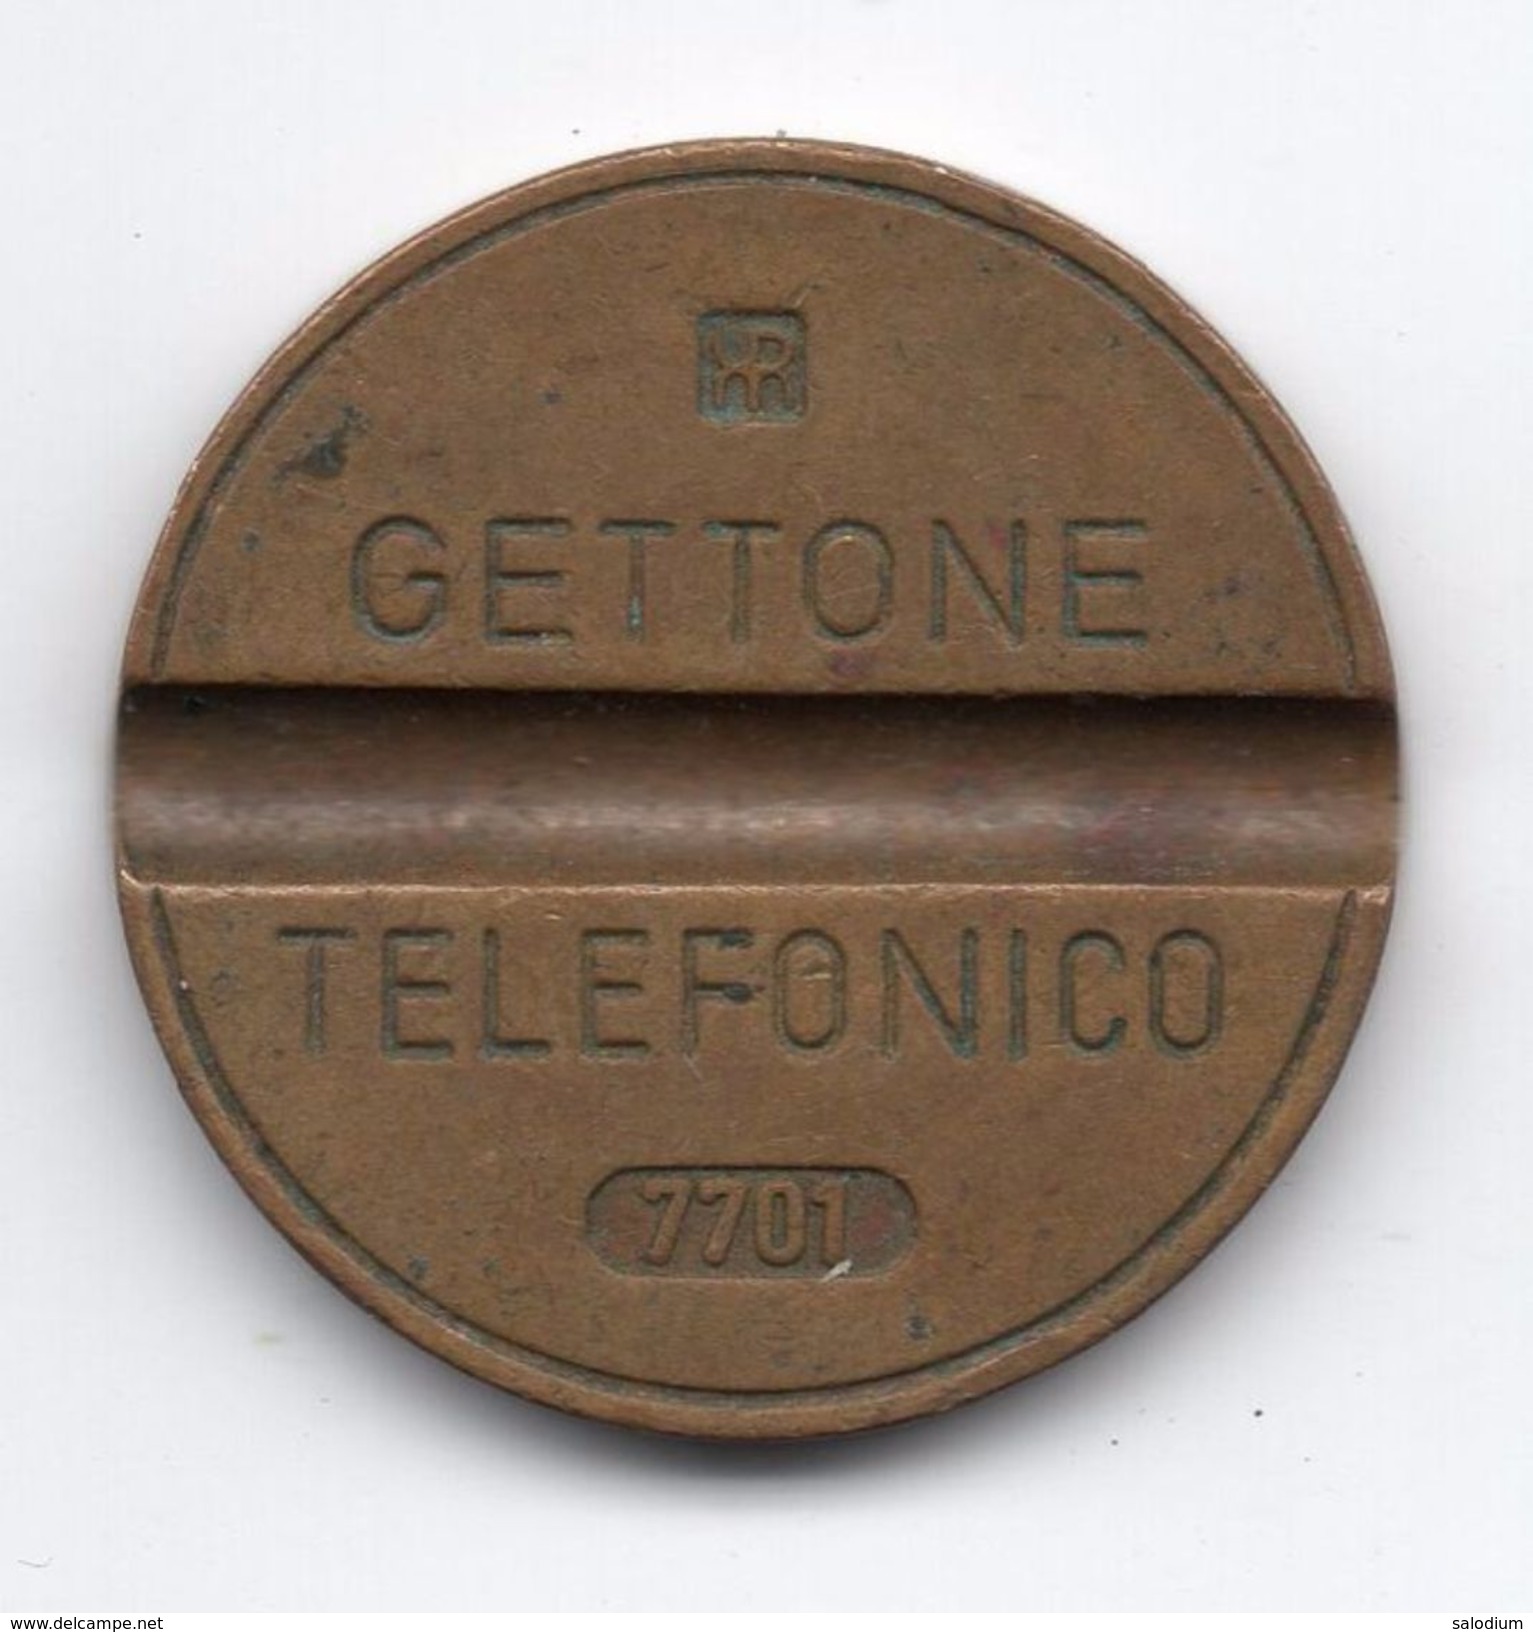 Gettone Telefonico 7701 Token Telephone - (Id-774) - Professionnels/De Société